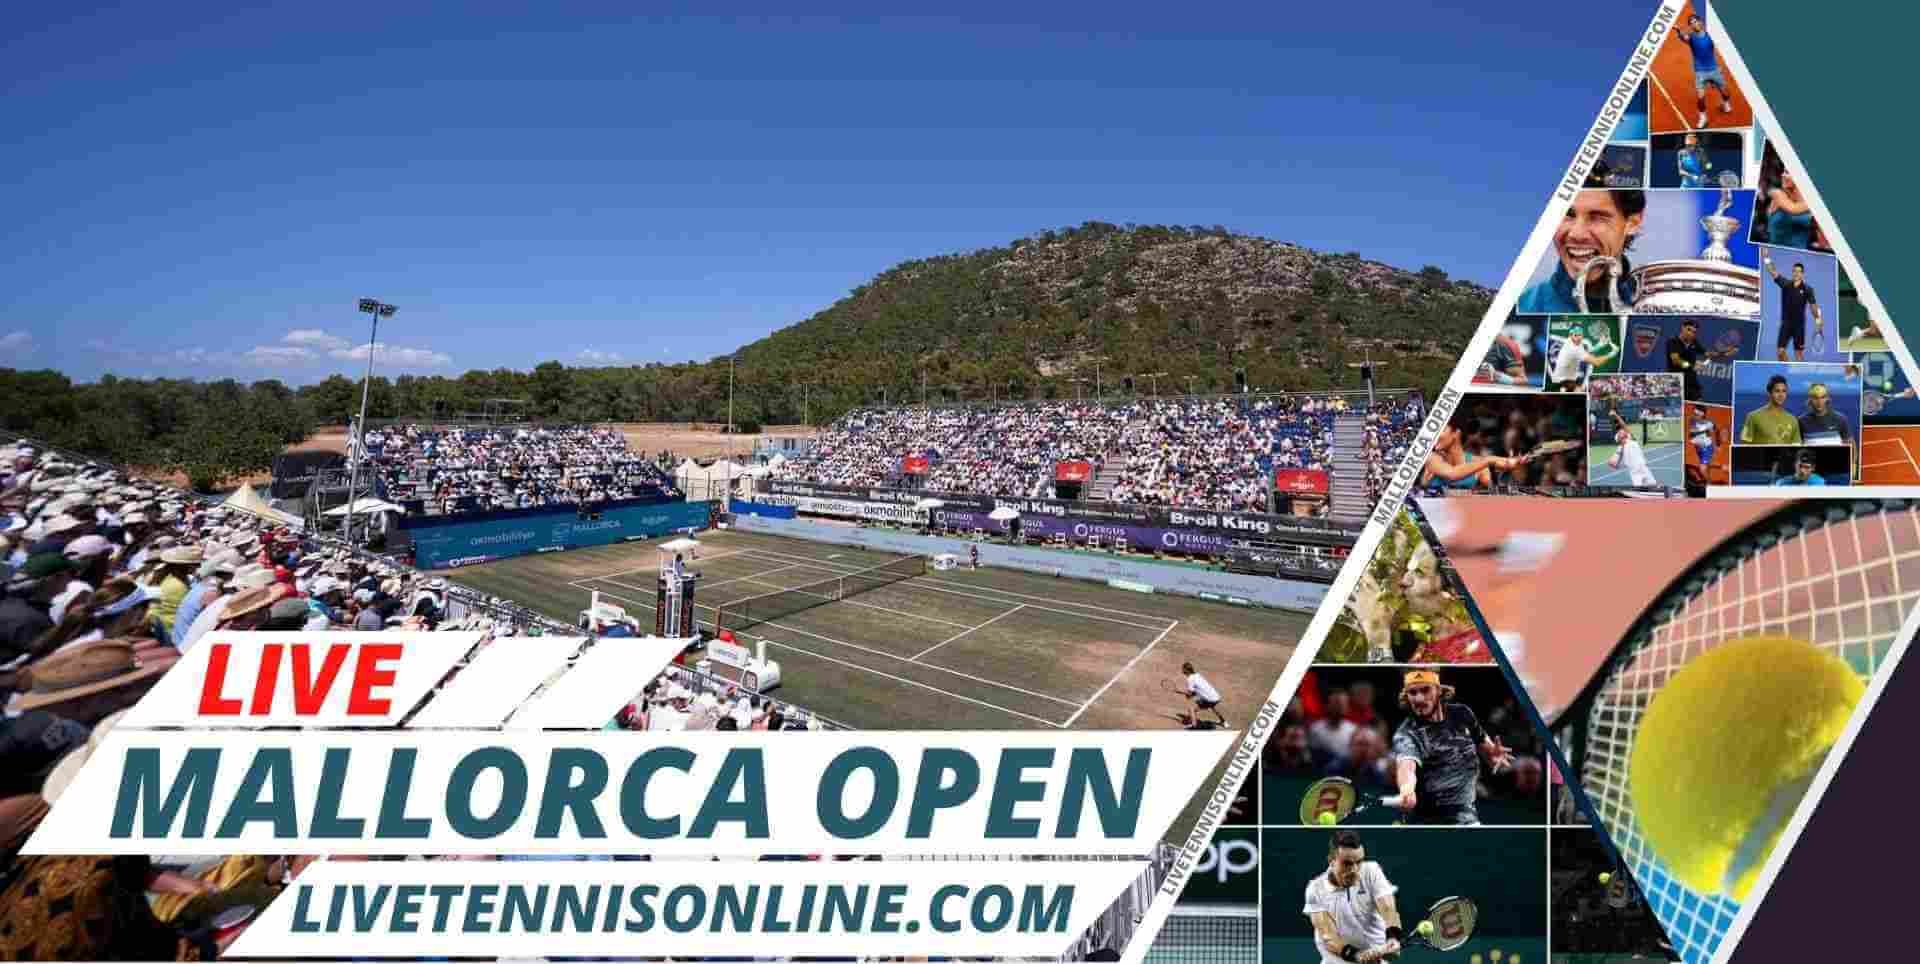 Mallorca Open Tennis Live Streaming